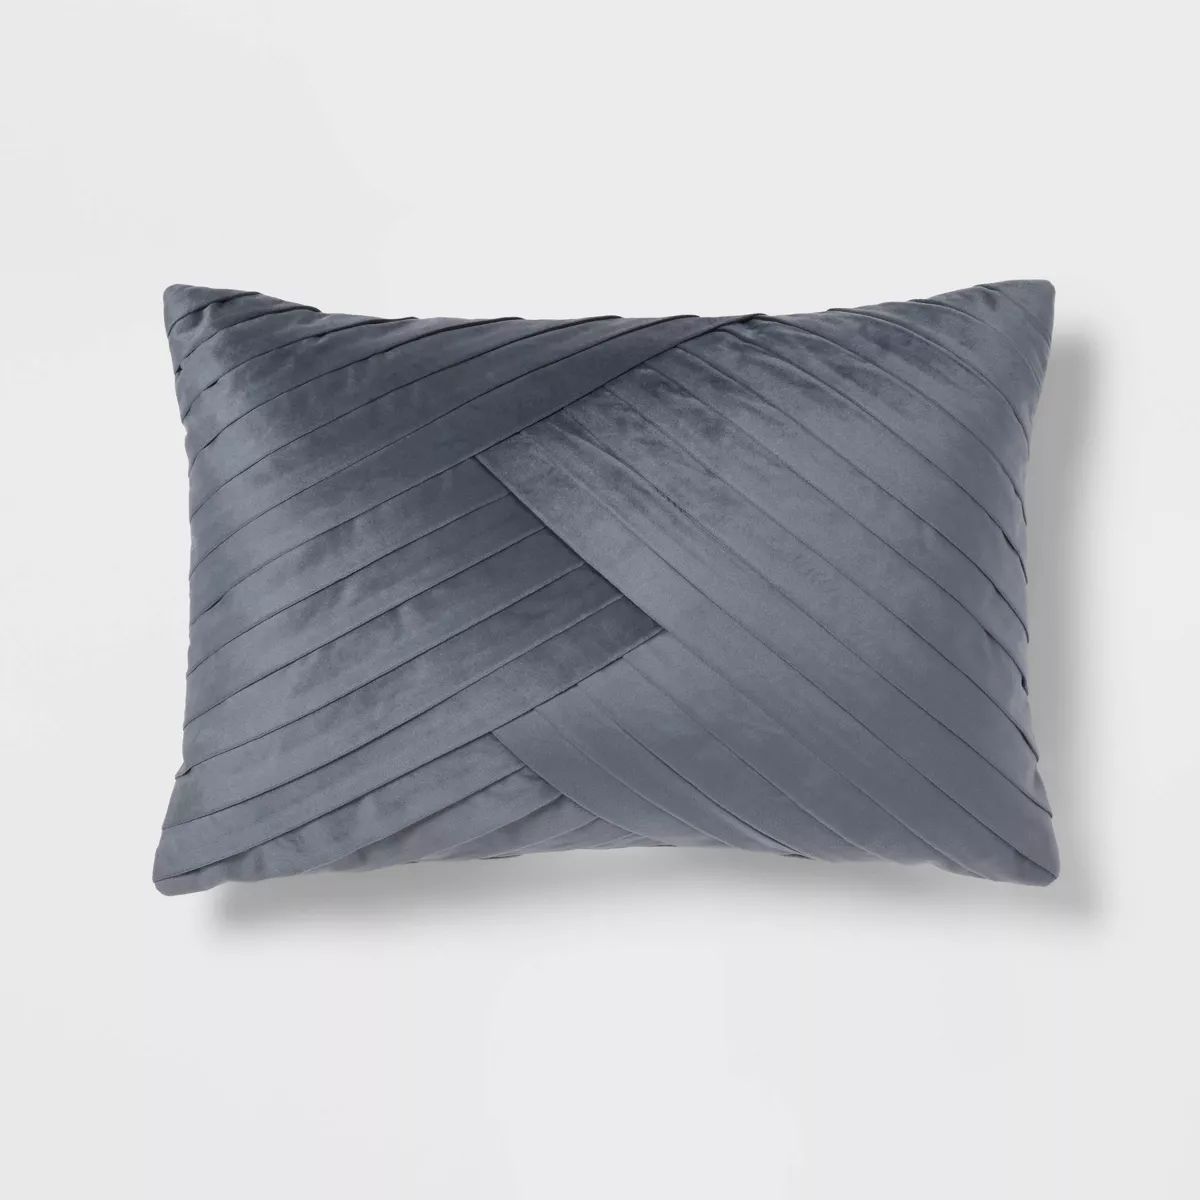 14"x20" Luxe Oblong Velvet Pleated Decorative Pillow Slate Blue - Threshold™ | Target